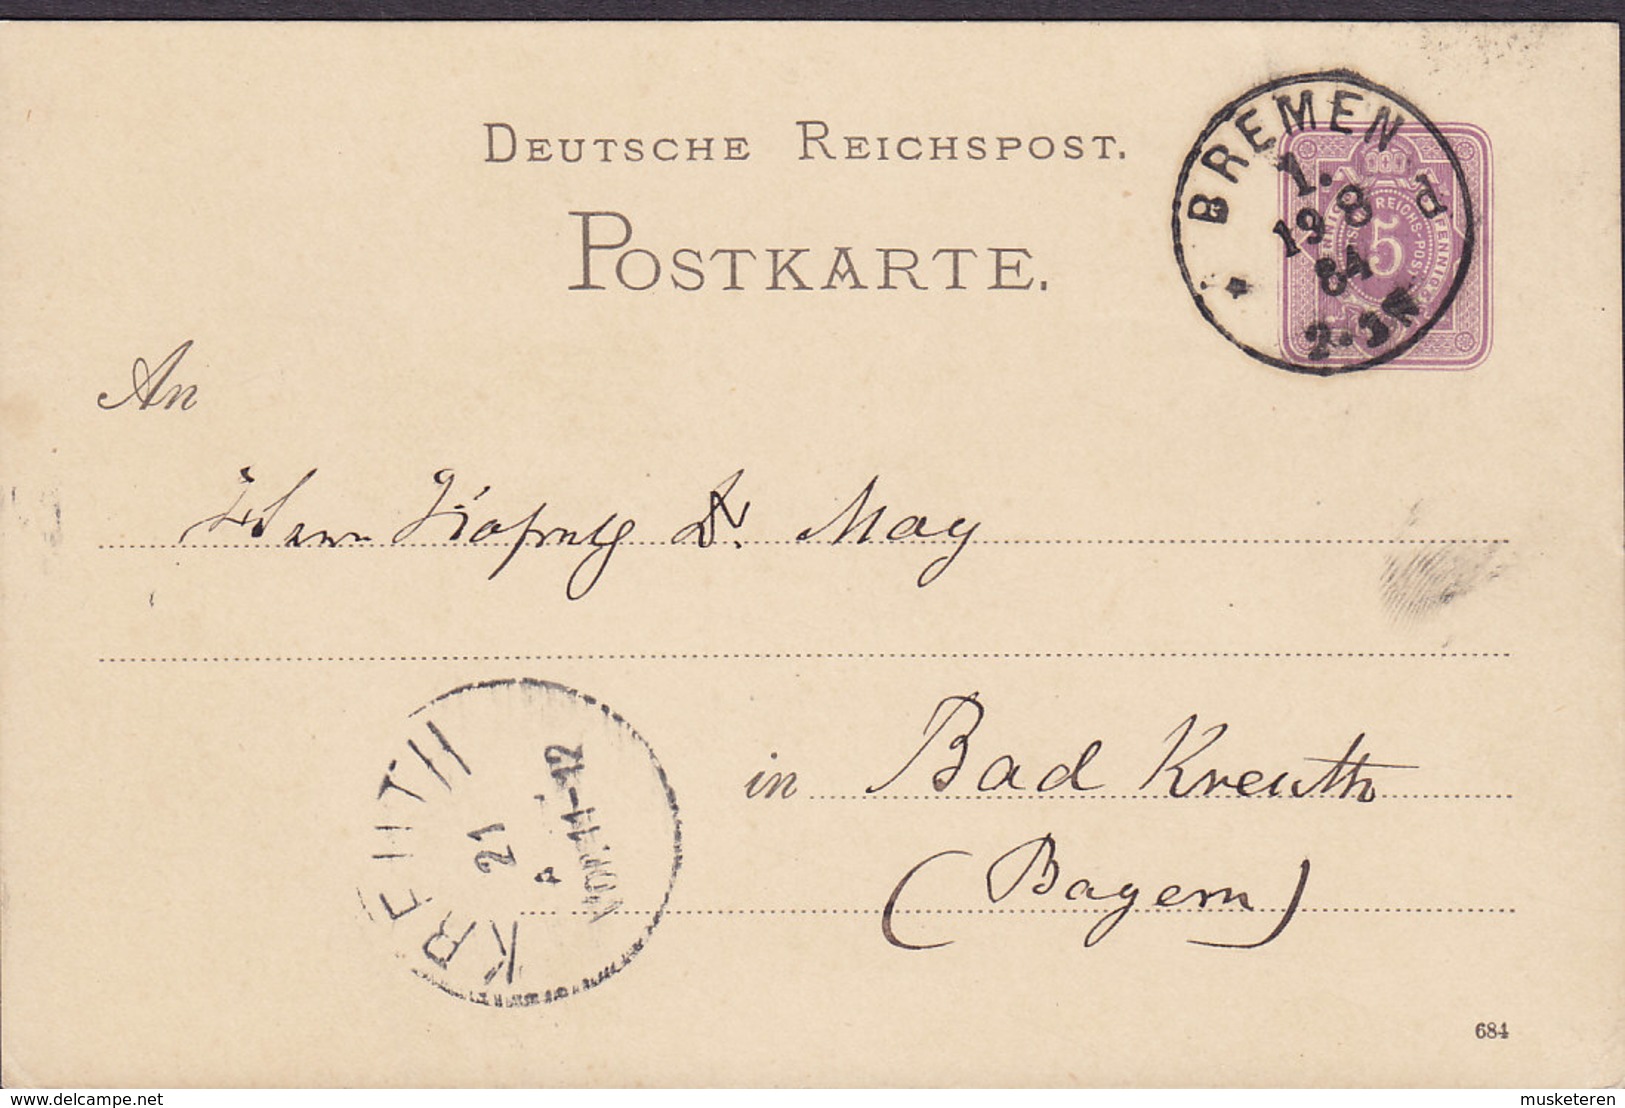 Germany Deutsche Reichspost Postal Stationery Ganzsache 5 Pf. (684) BREMEN 1884 Bad KREUTH Bayern (Arr.) (2 Scans) - Postcards